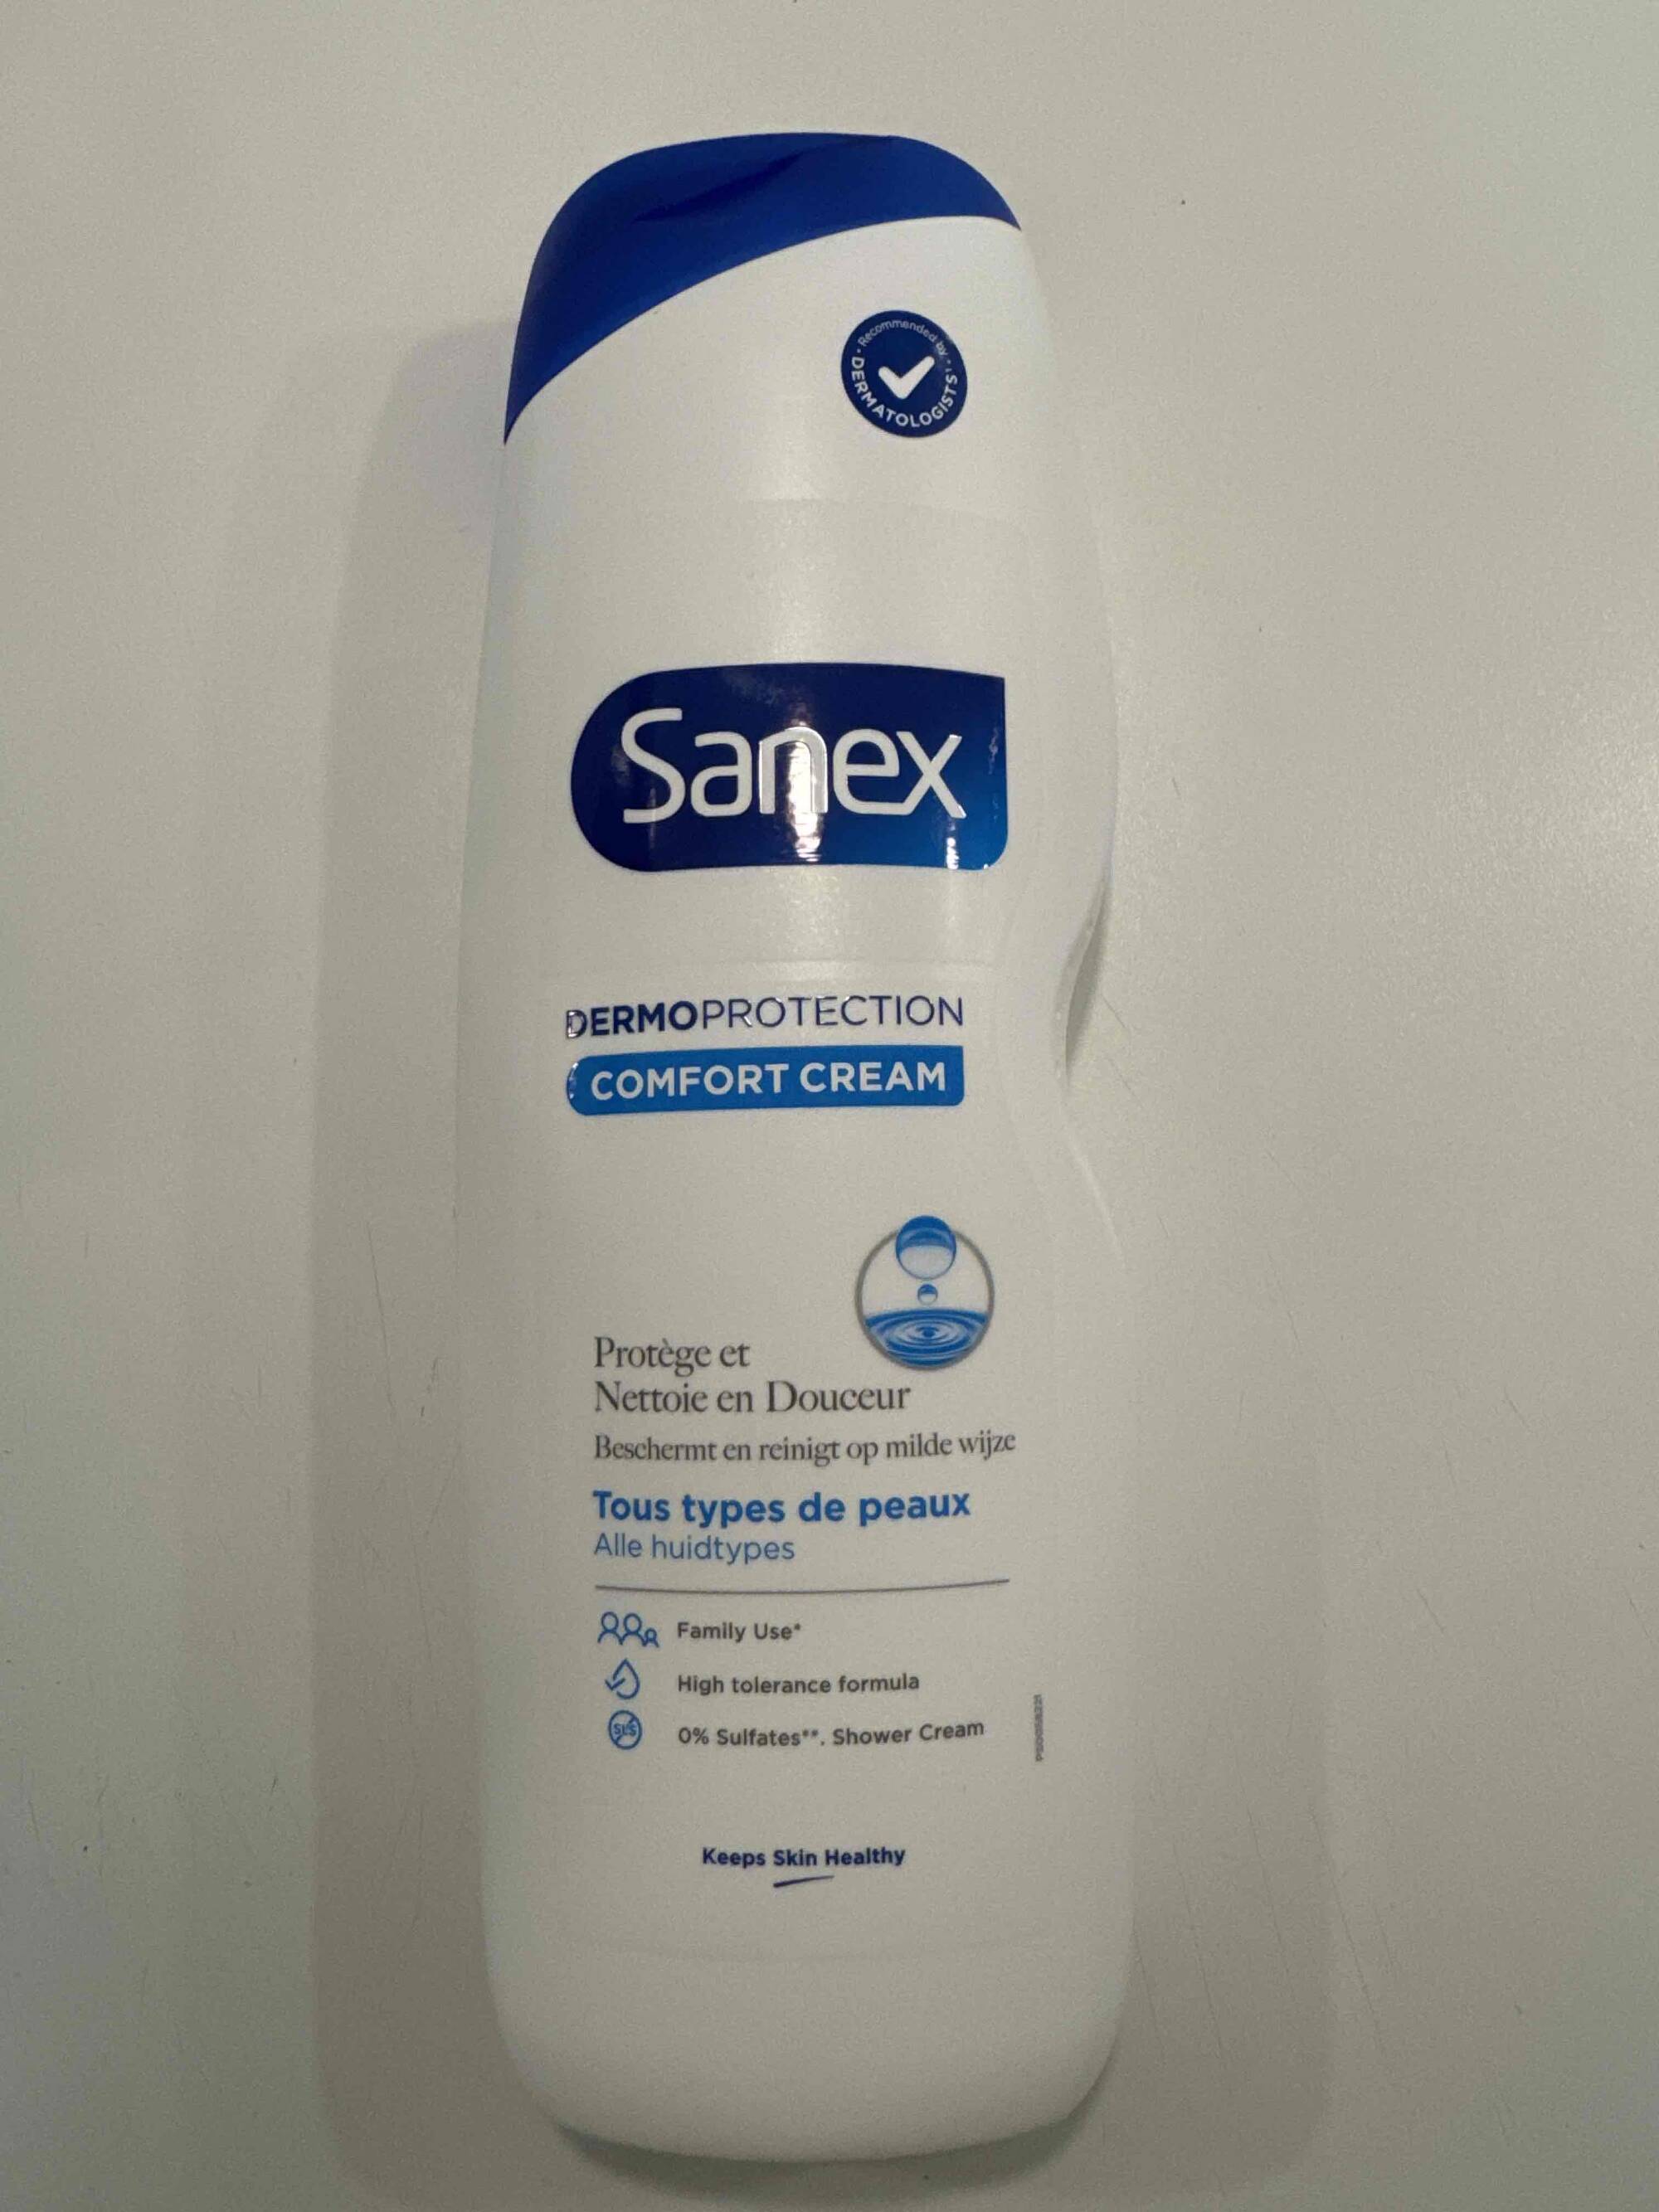 SANEX - Dermoprotection comfort cream - Protège et nettoie en douceur